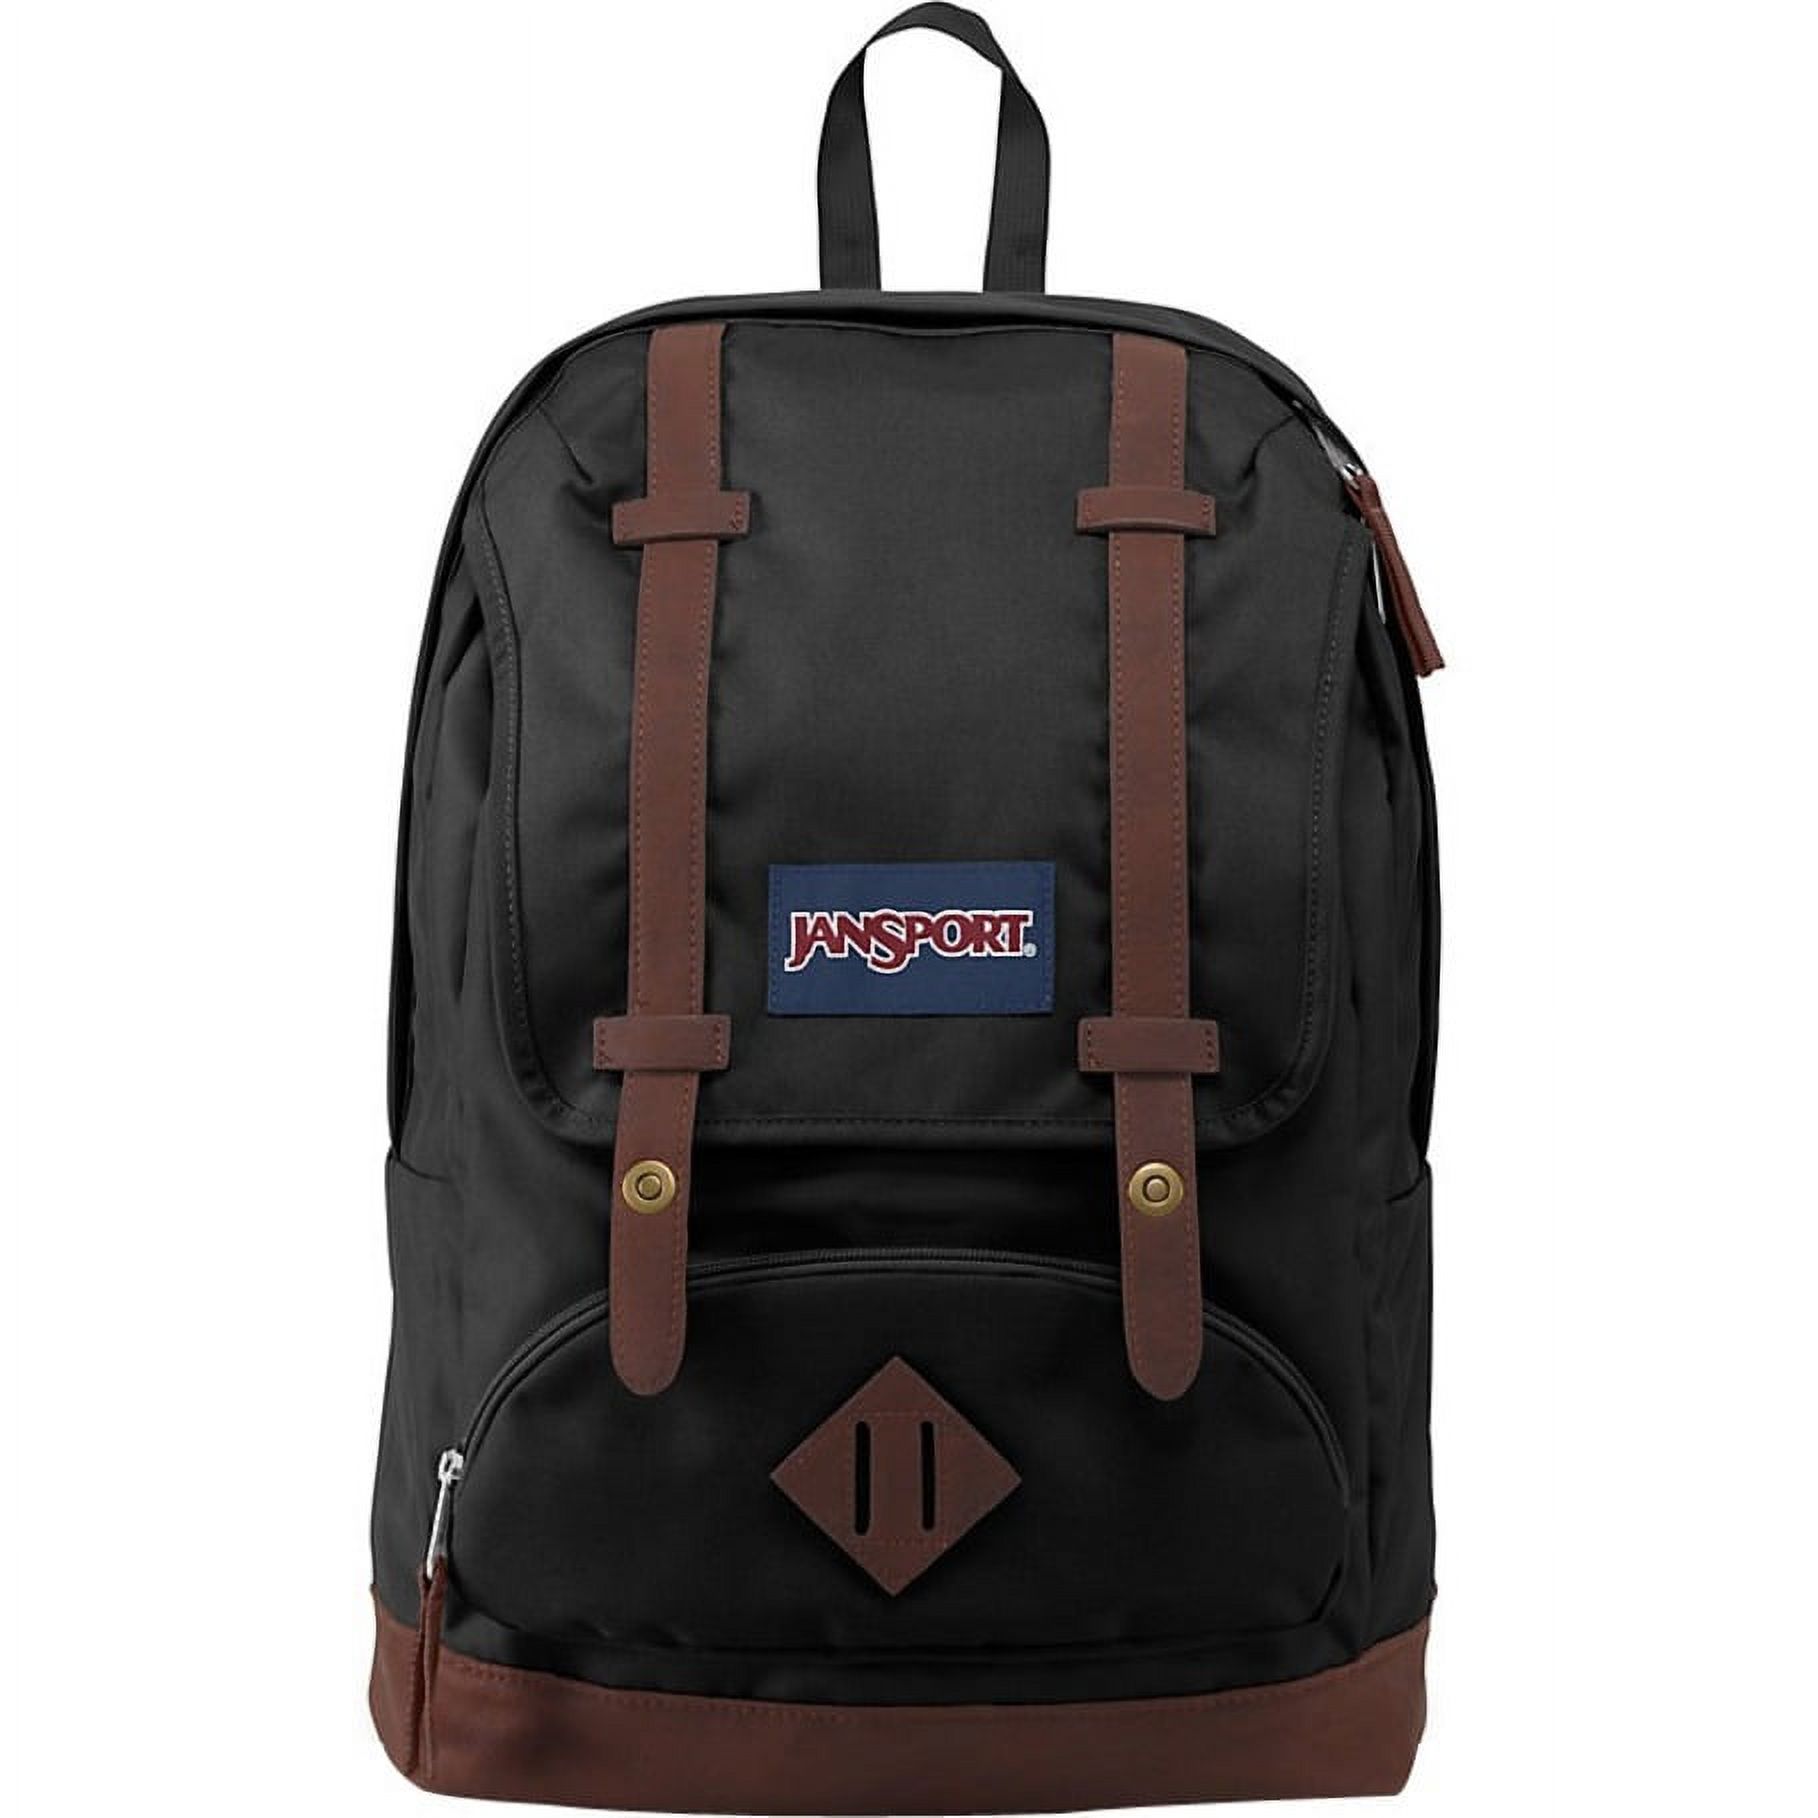 Jansport Cortlandt Carrying Case (Backpack) for 15" Notebook, Black - image 1 of 4